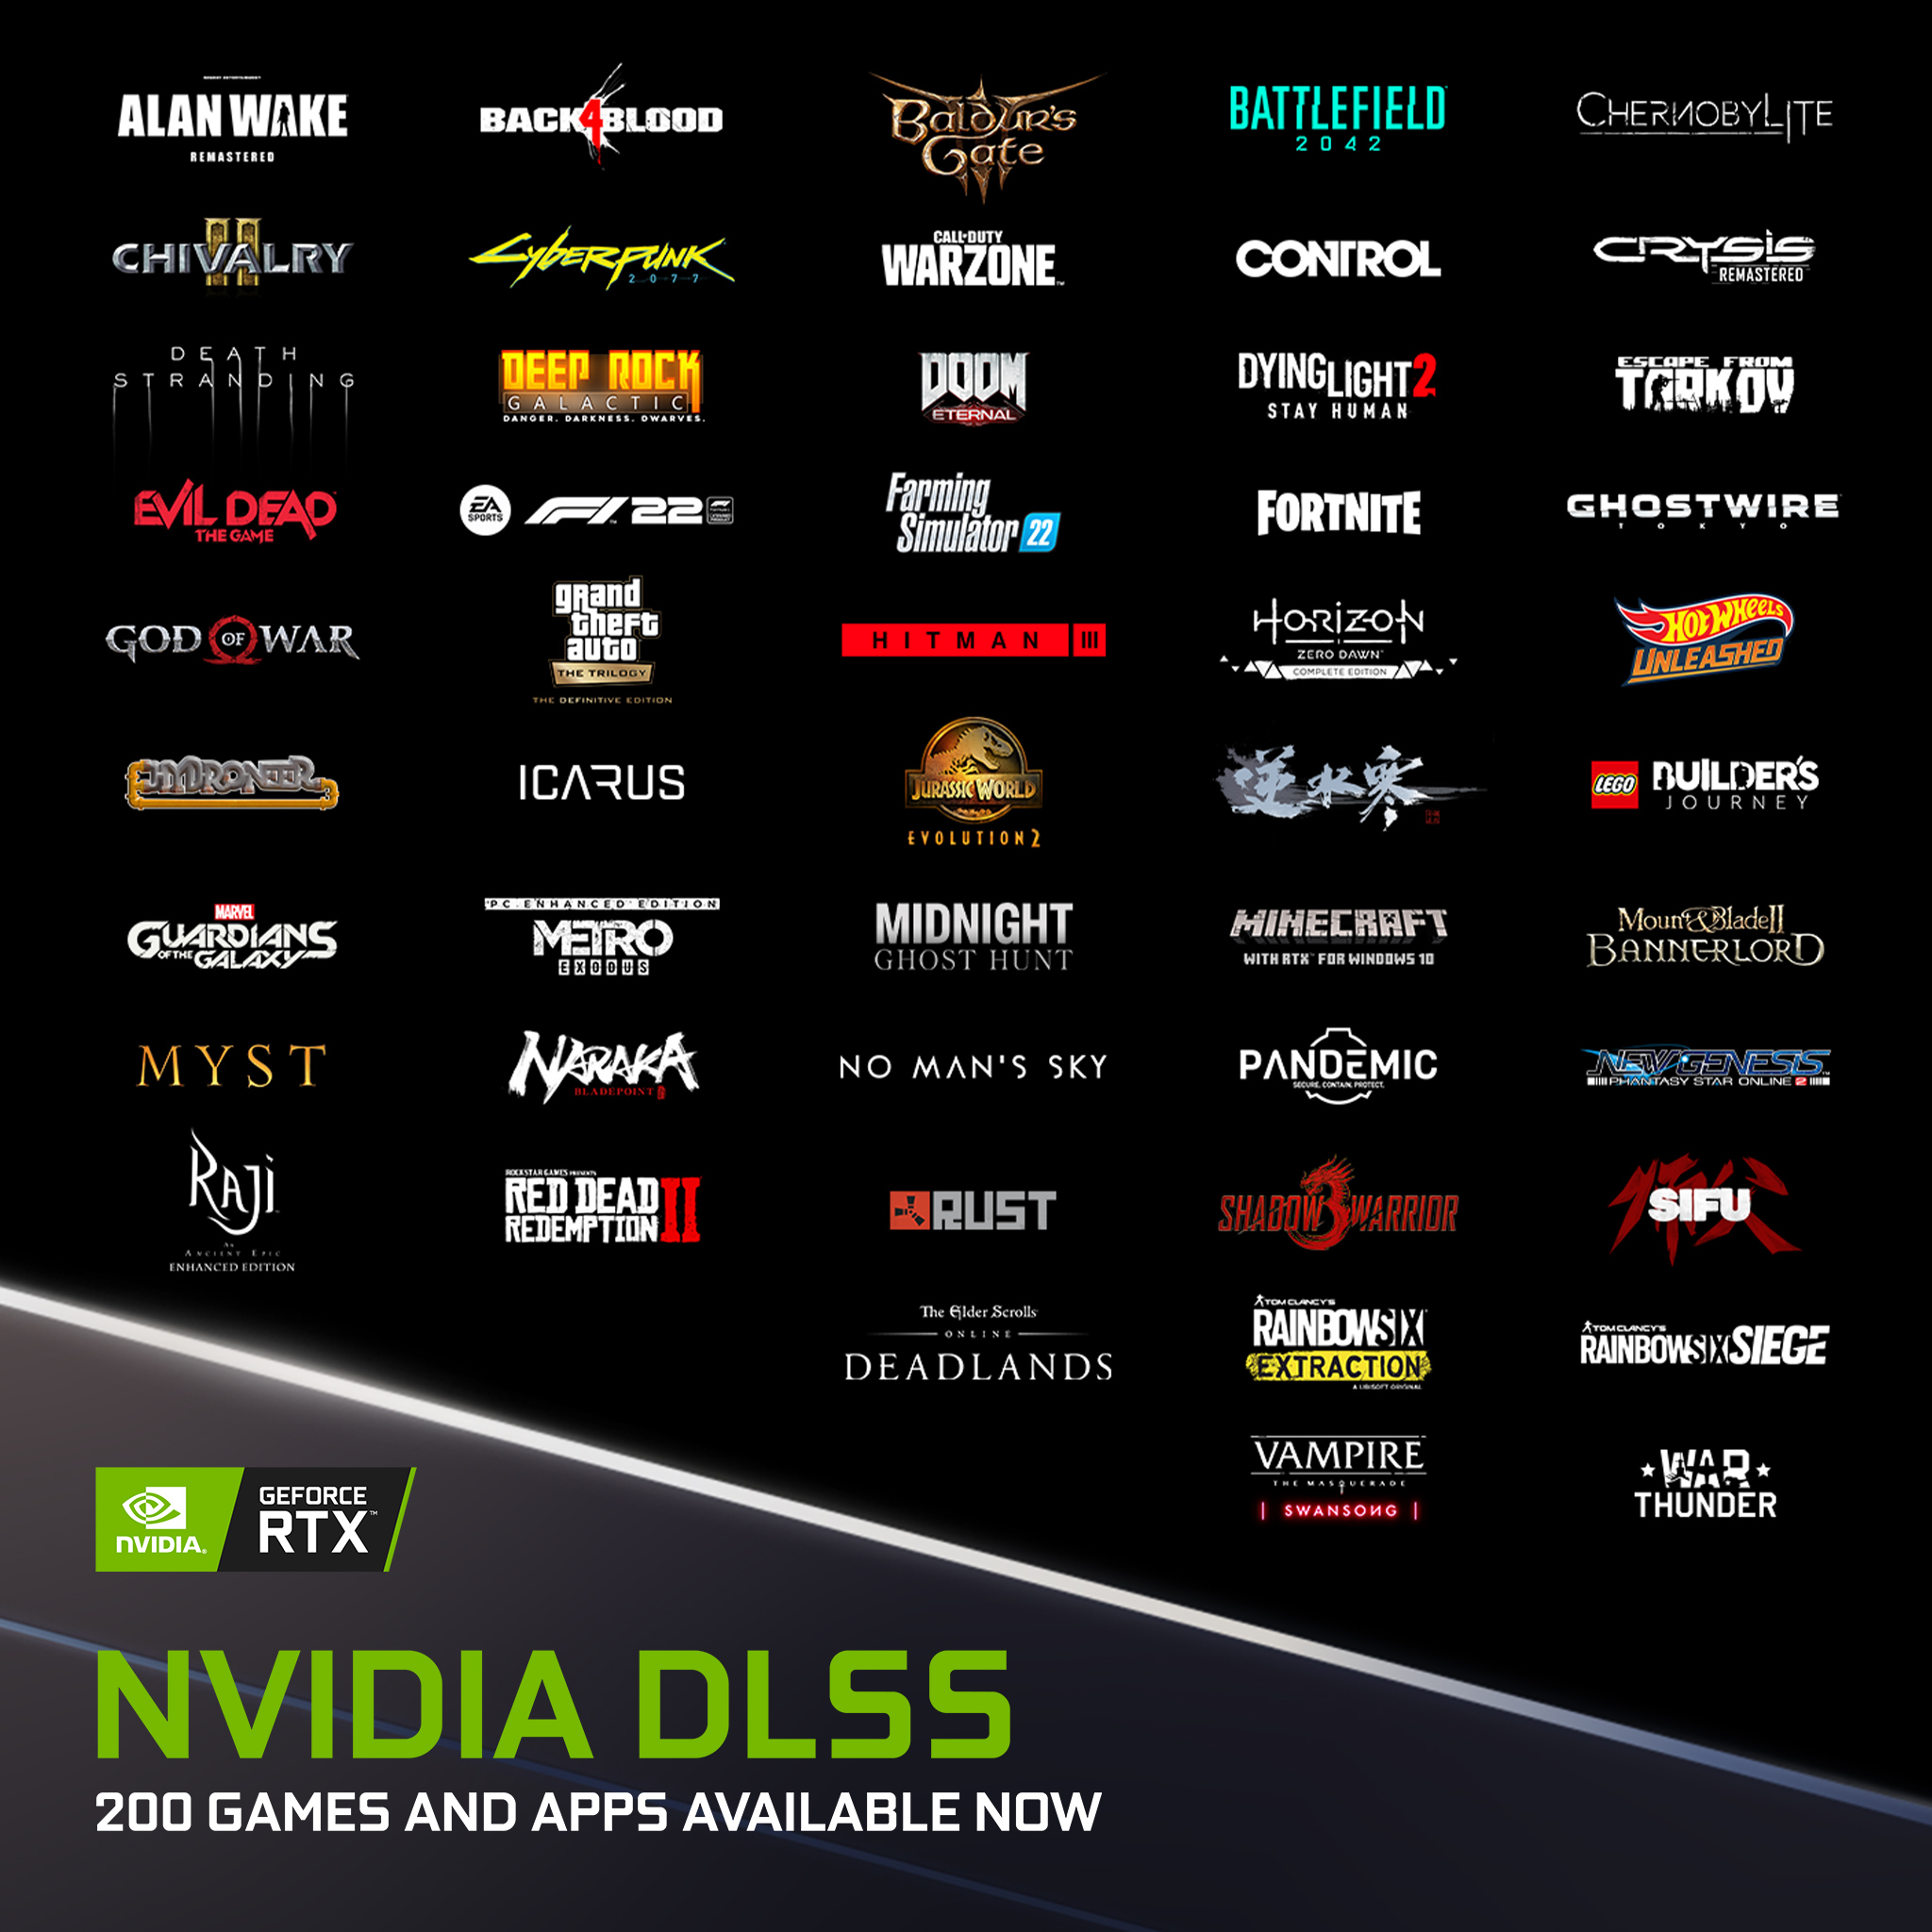 Już ponad 200 gier i aplikacji ze wsparciem dla NVIDIA DLSS